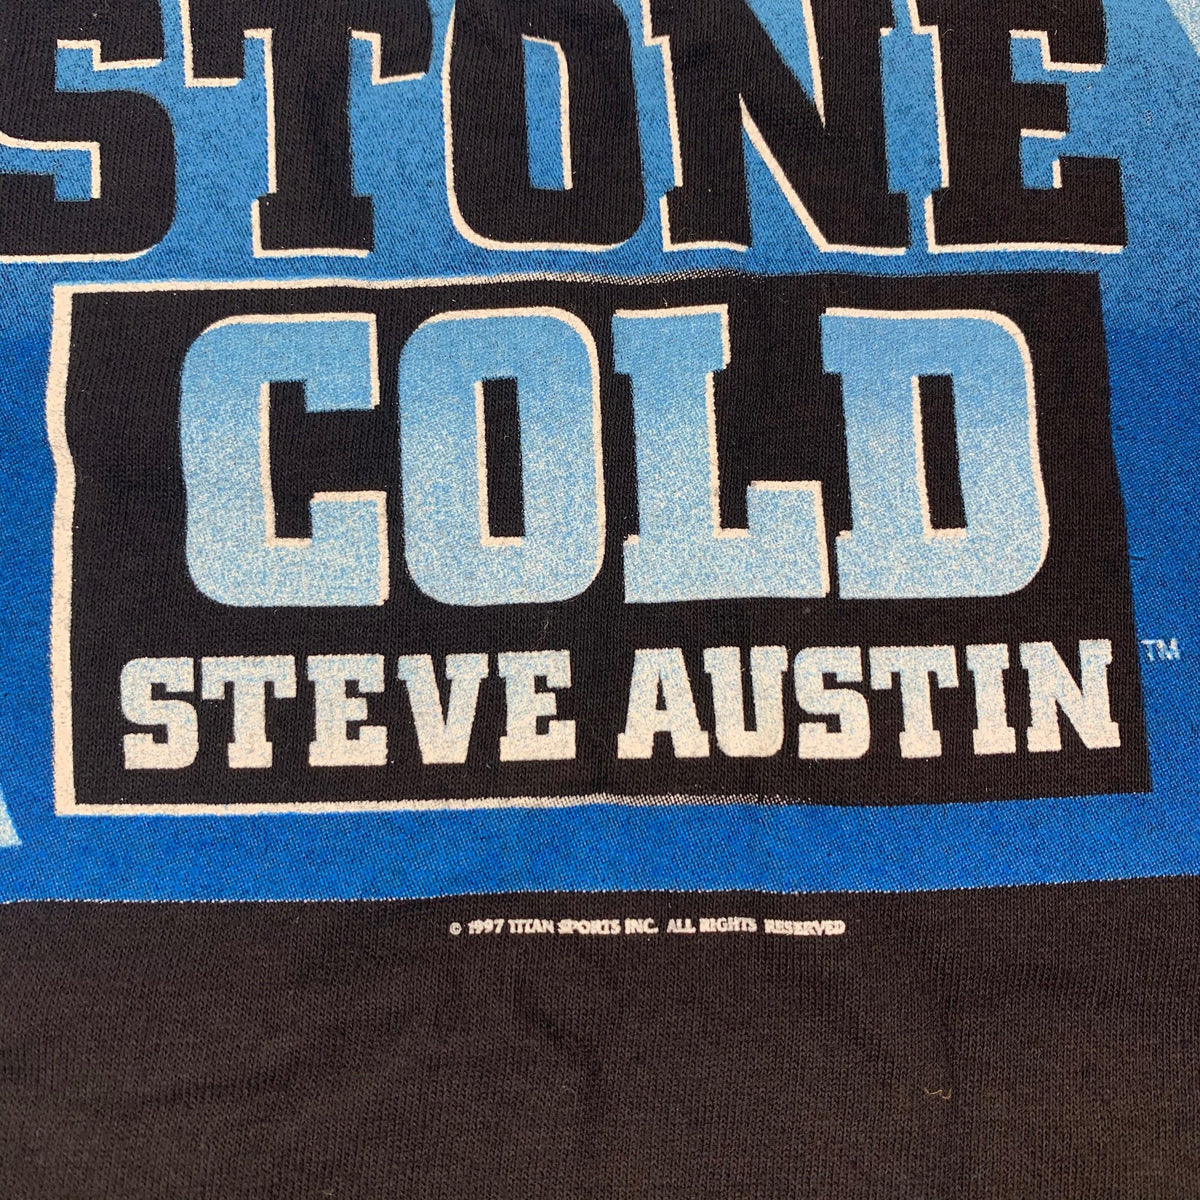 Vintage Stone Cold &quot;Austin 3:16&quot; T-Shirt - jointcustodydc